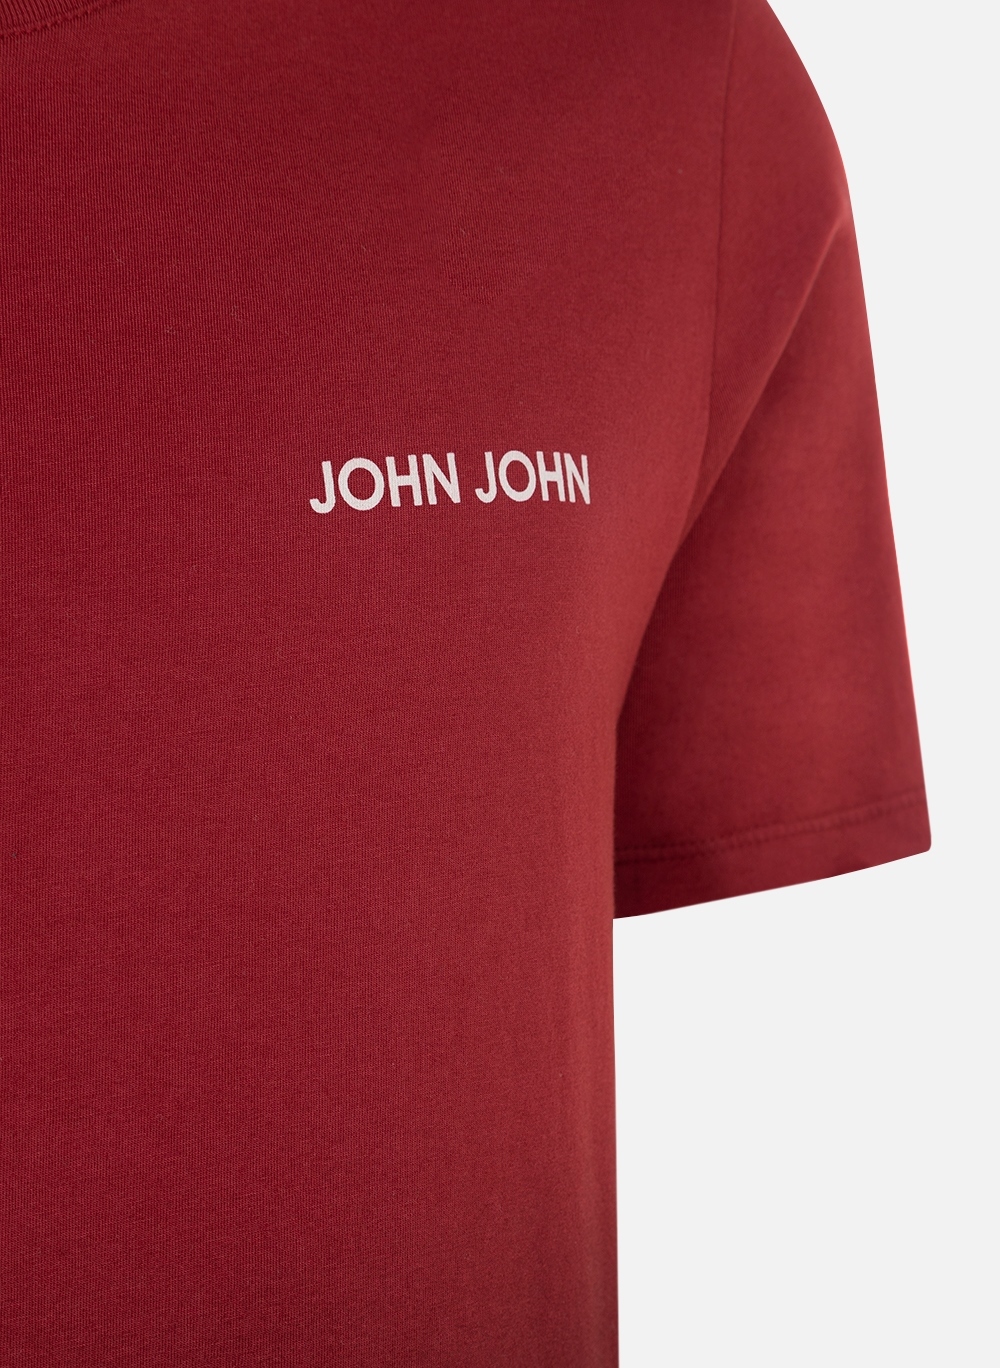 Camiseta Masculina John John Line Vermelho - Estilo Minimalista e  Sofisticado para Homens Modernos